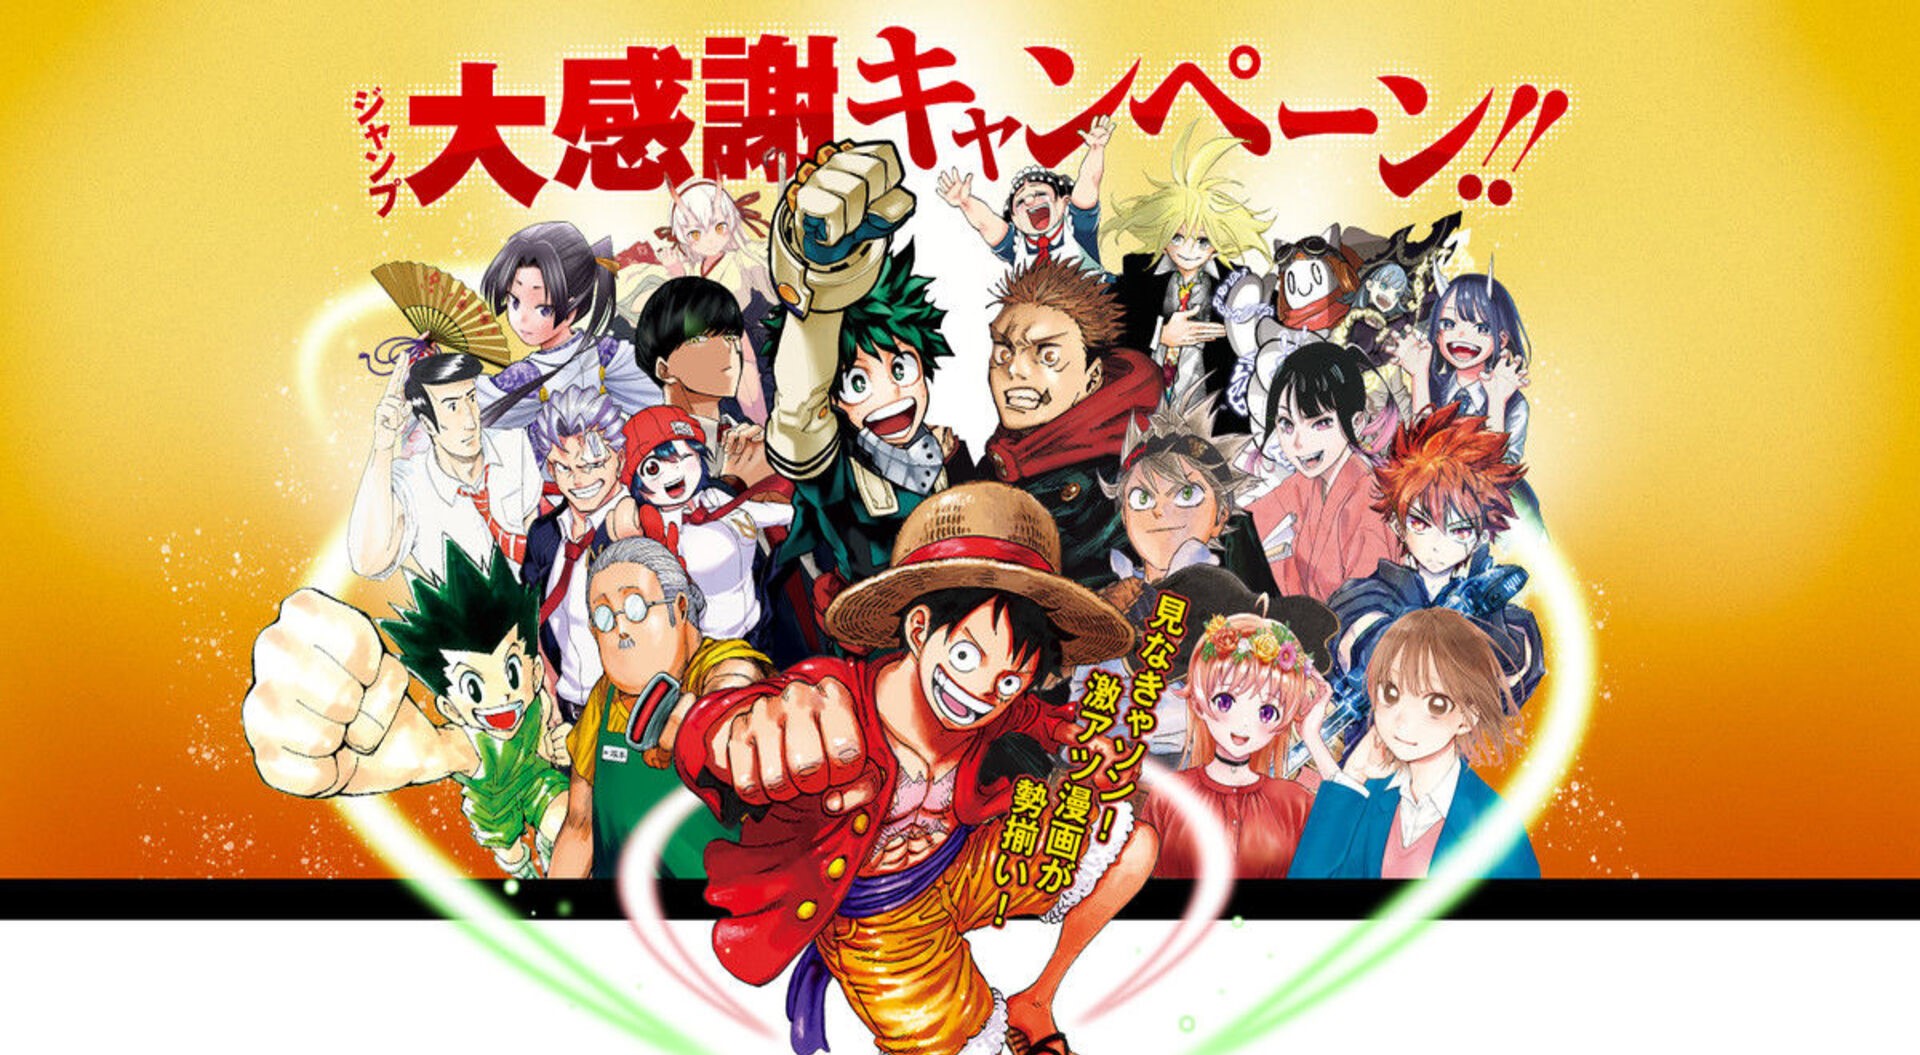 MASHLE Anime vol.1-18 Japanese Comic Jump Shueisha Manga Book Set Anime |  eBay